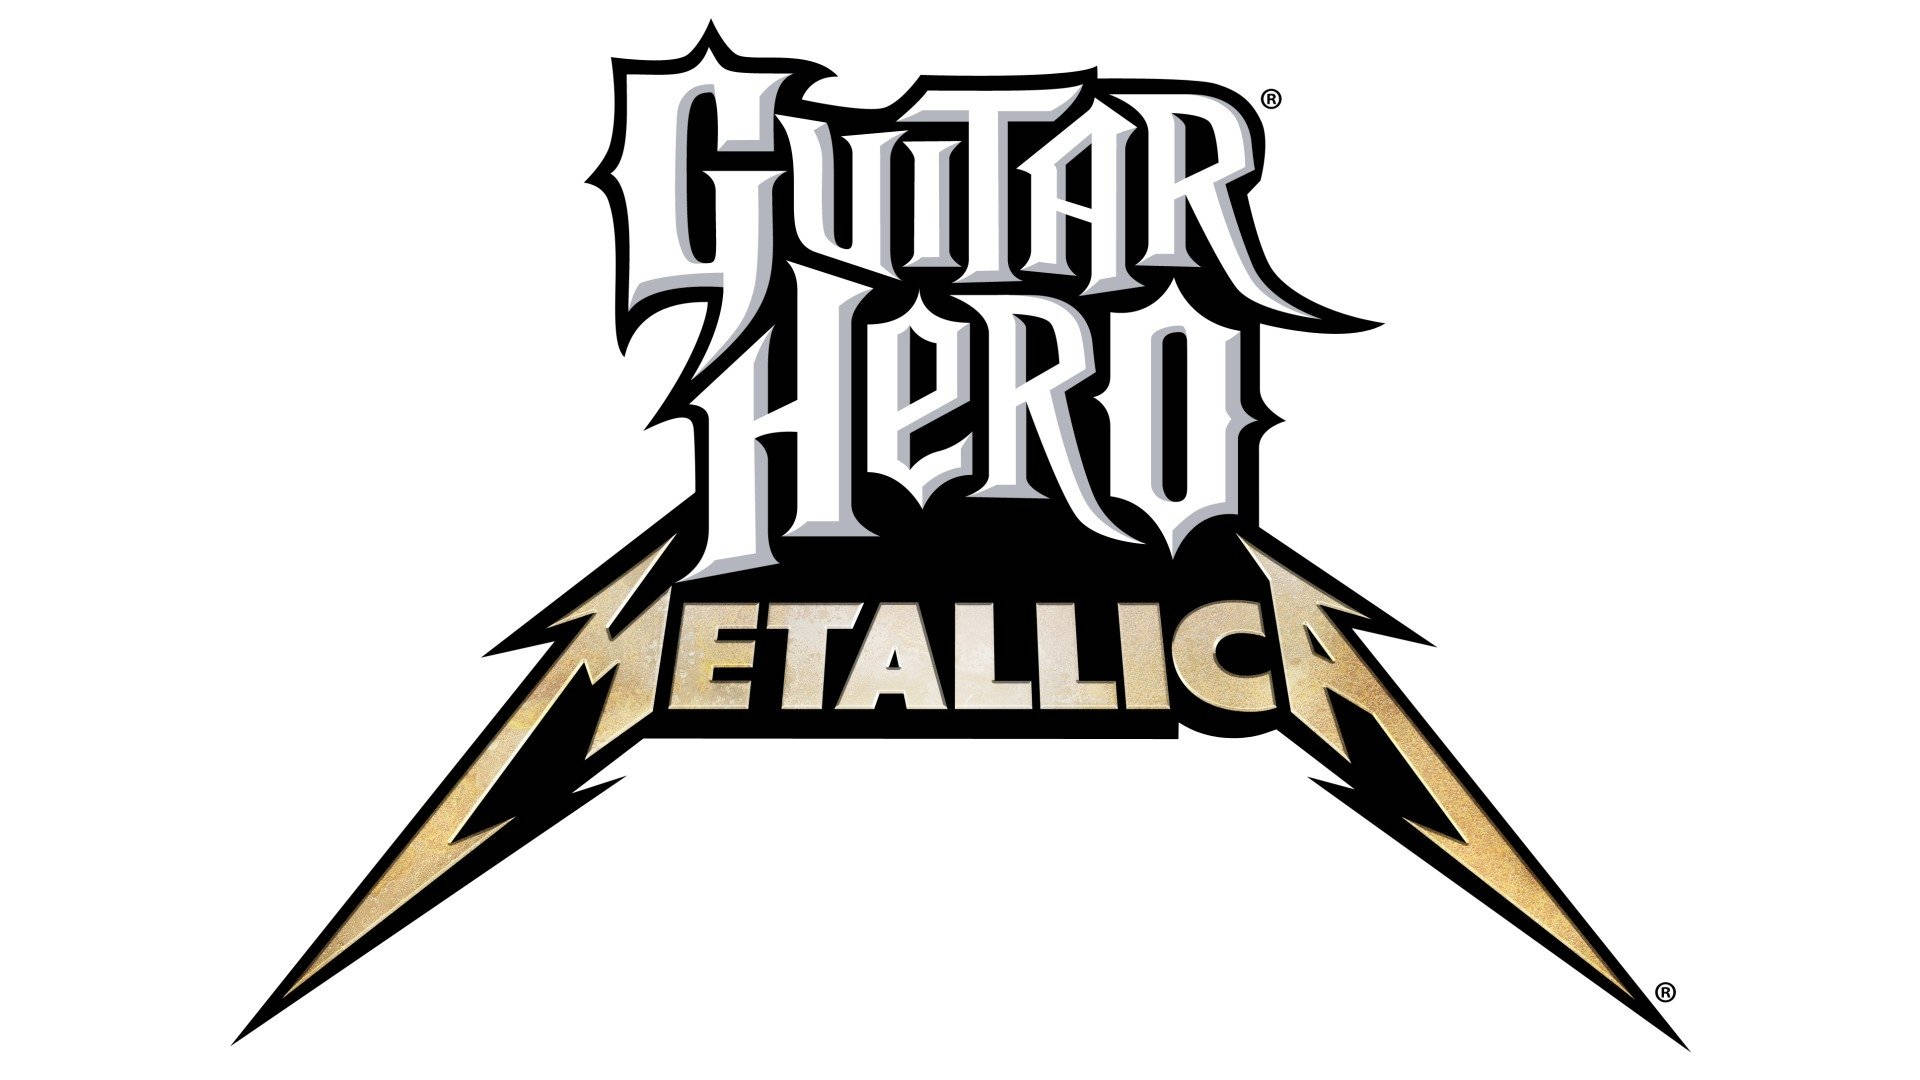 Fondods De Guitar Hero